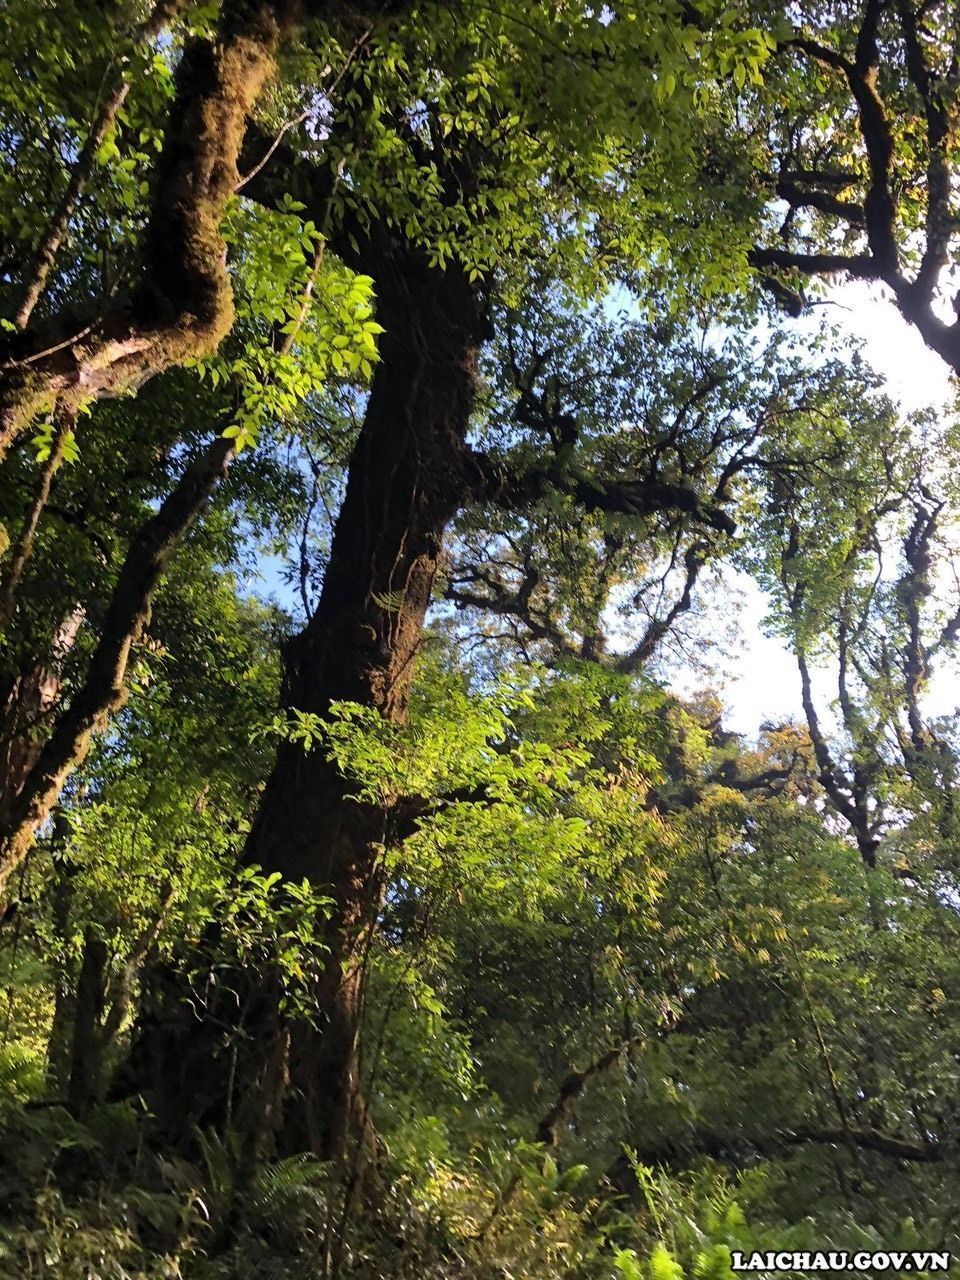 Các loại cây đua nhau vươn lên đón ánh nắng mặt trời thể hiện sức sống mãnh liệt, tạo nên sự đa dạng sinh học cho những cánh rừng nơi đây. (Ảnh: BBT)